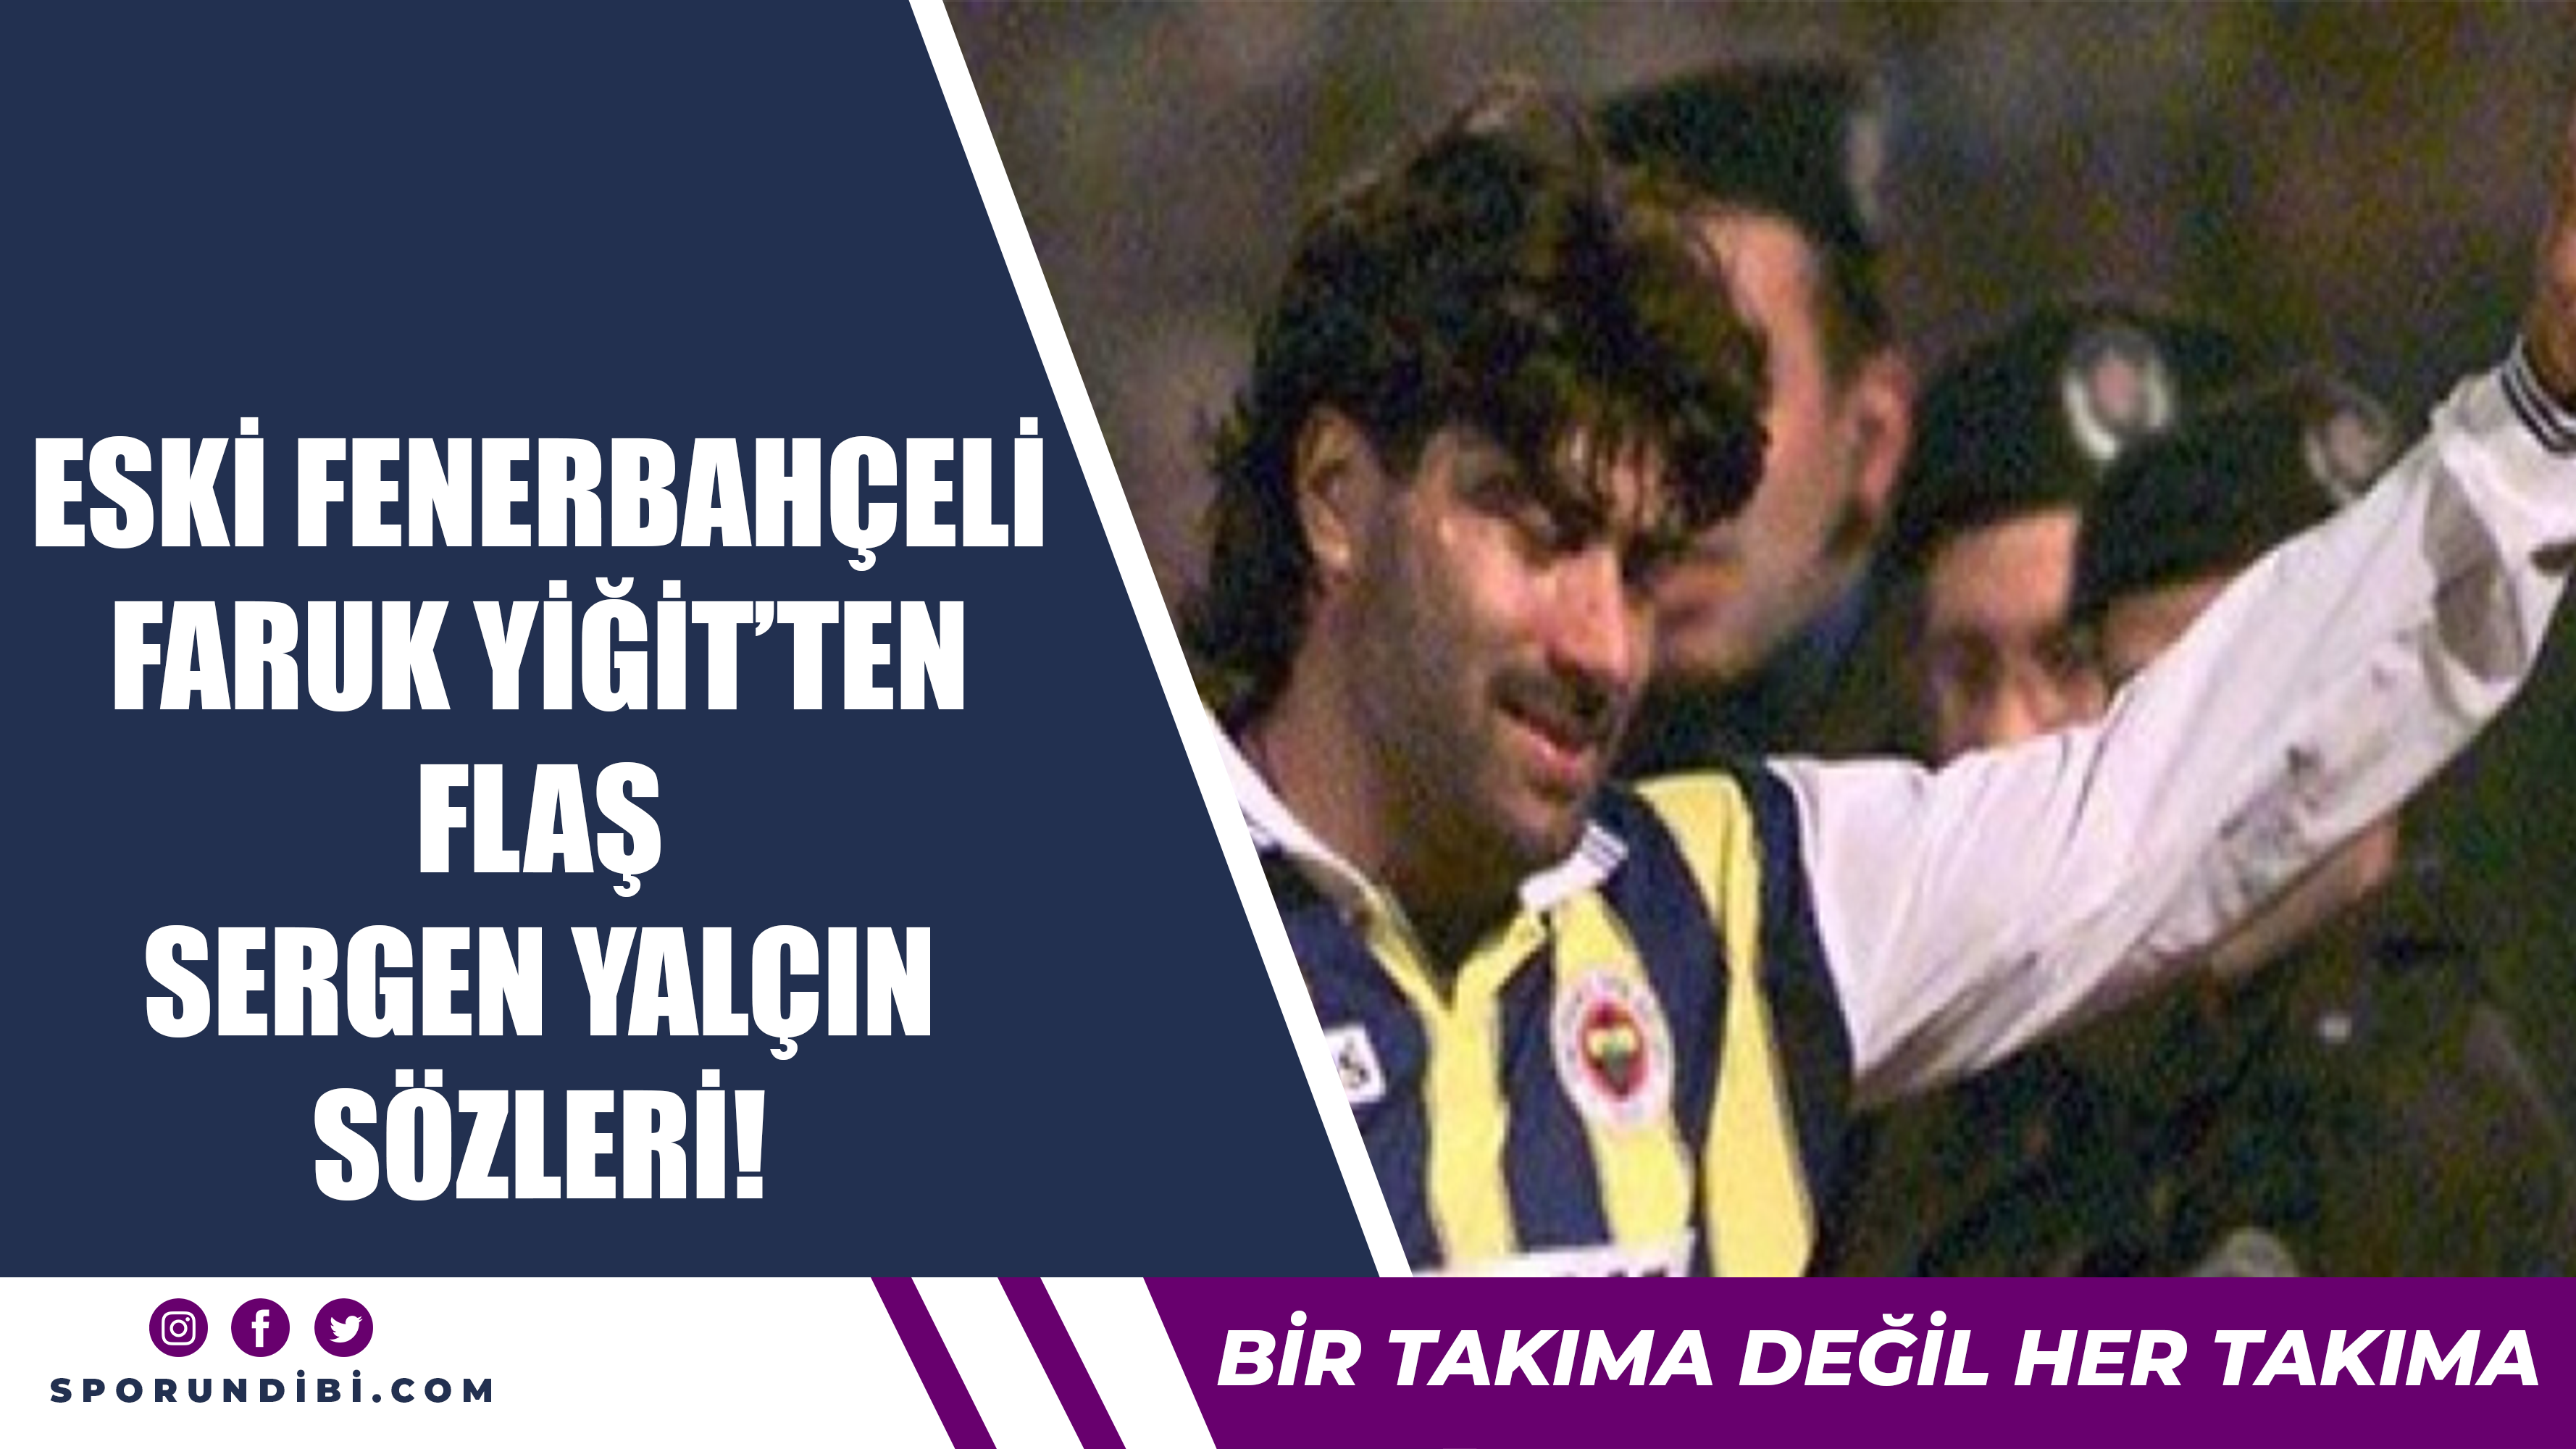 Eski Fenerbahçeli Faruk Yiğit'ten flaş Sergen Yalçın sözleri!